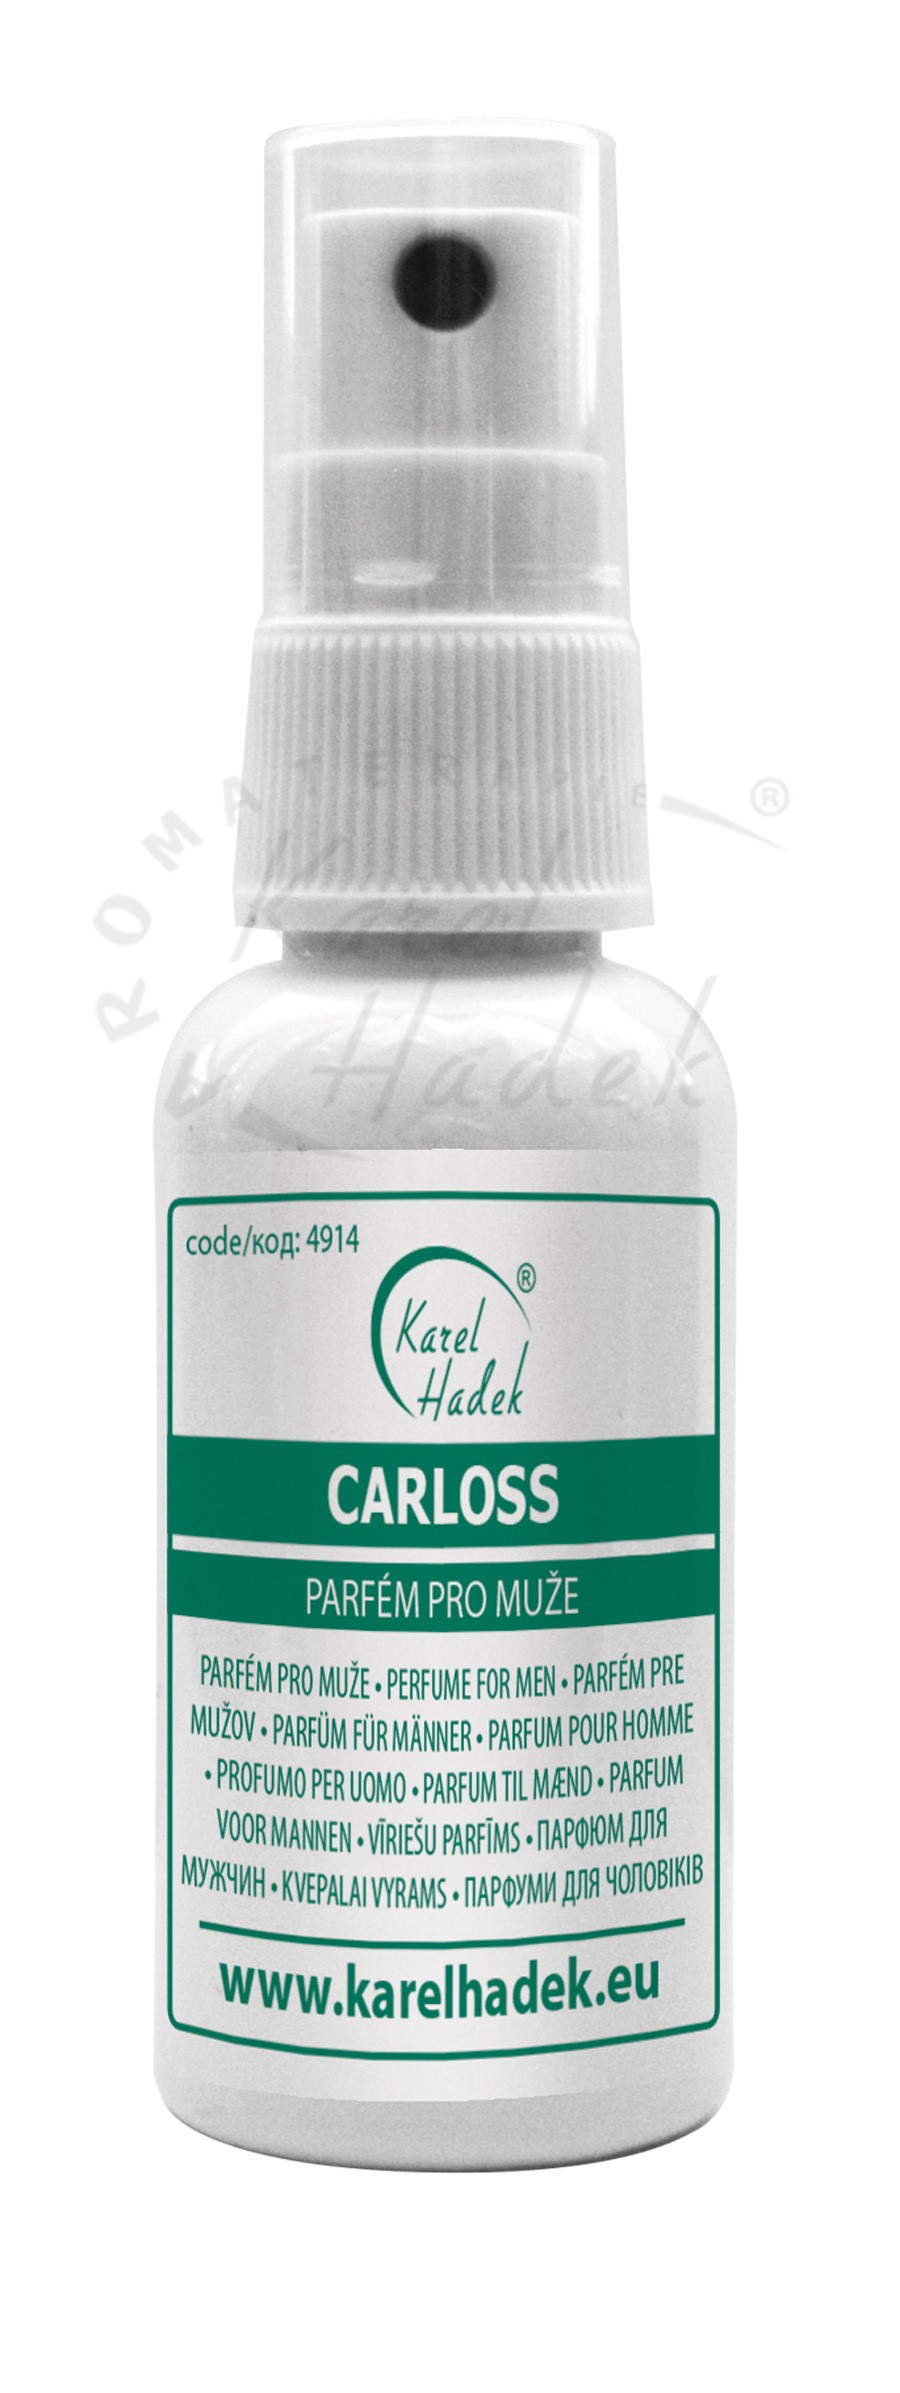 CARLOSS - exkluzívny parfum pre mužov - 3 ml